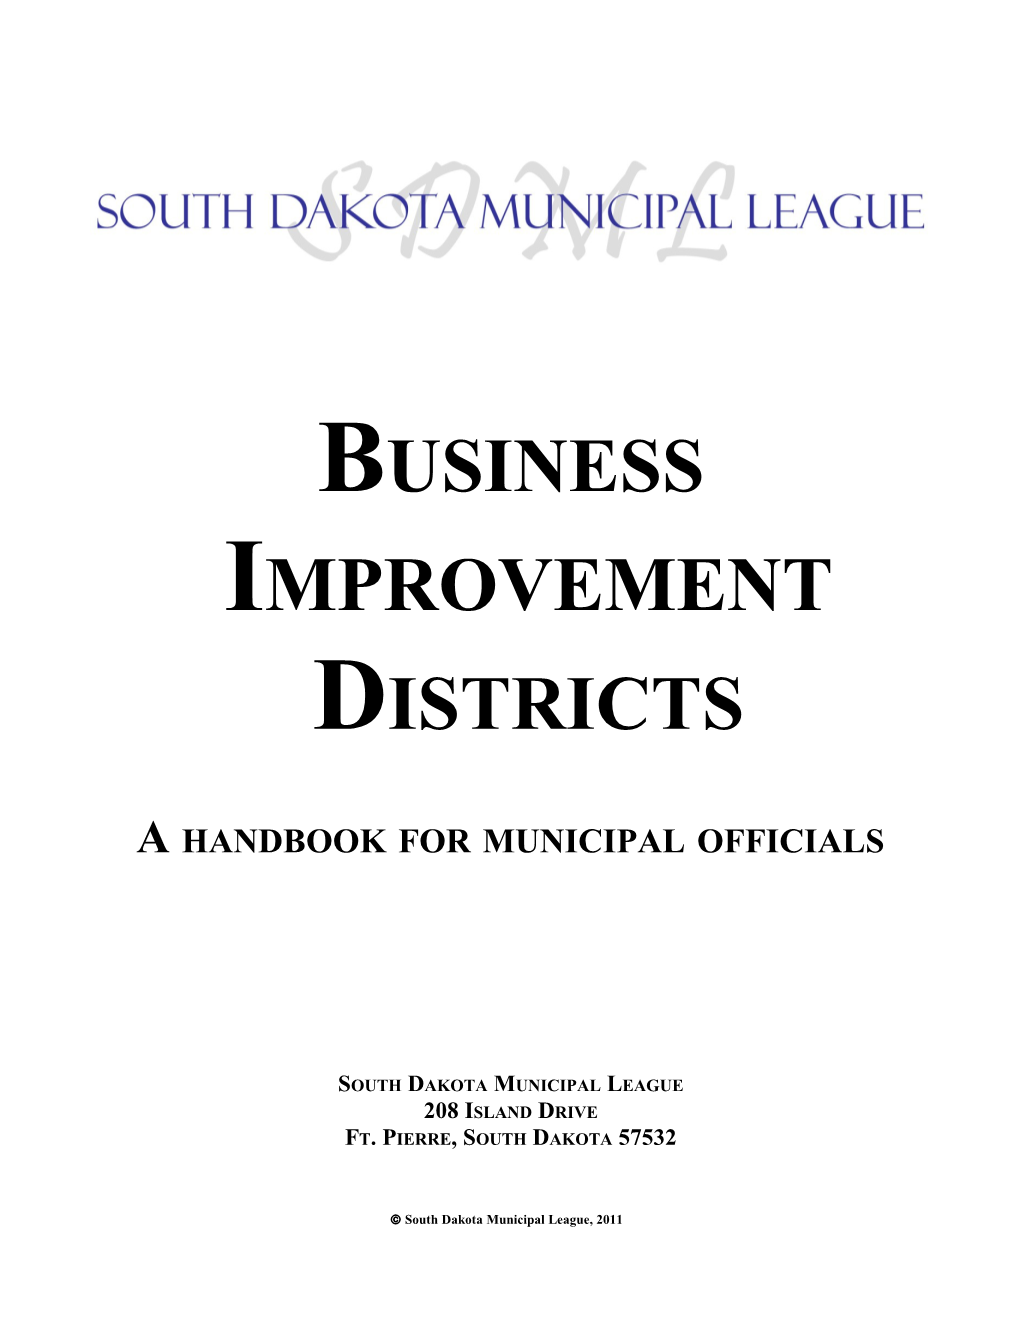 A Handbook for Municipal Officials